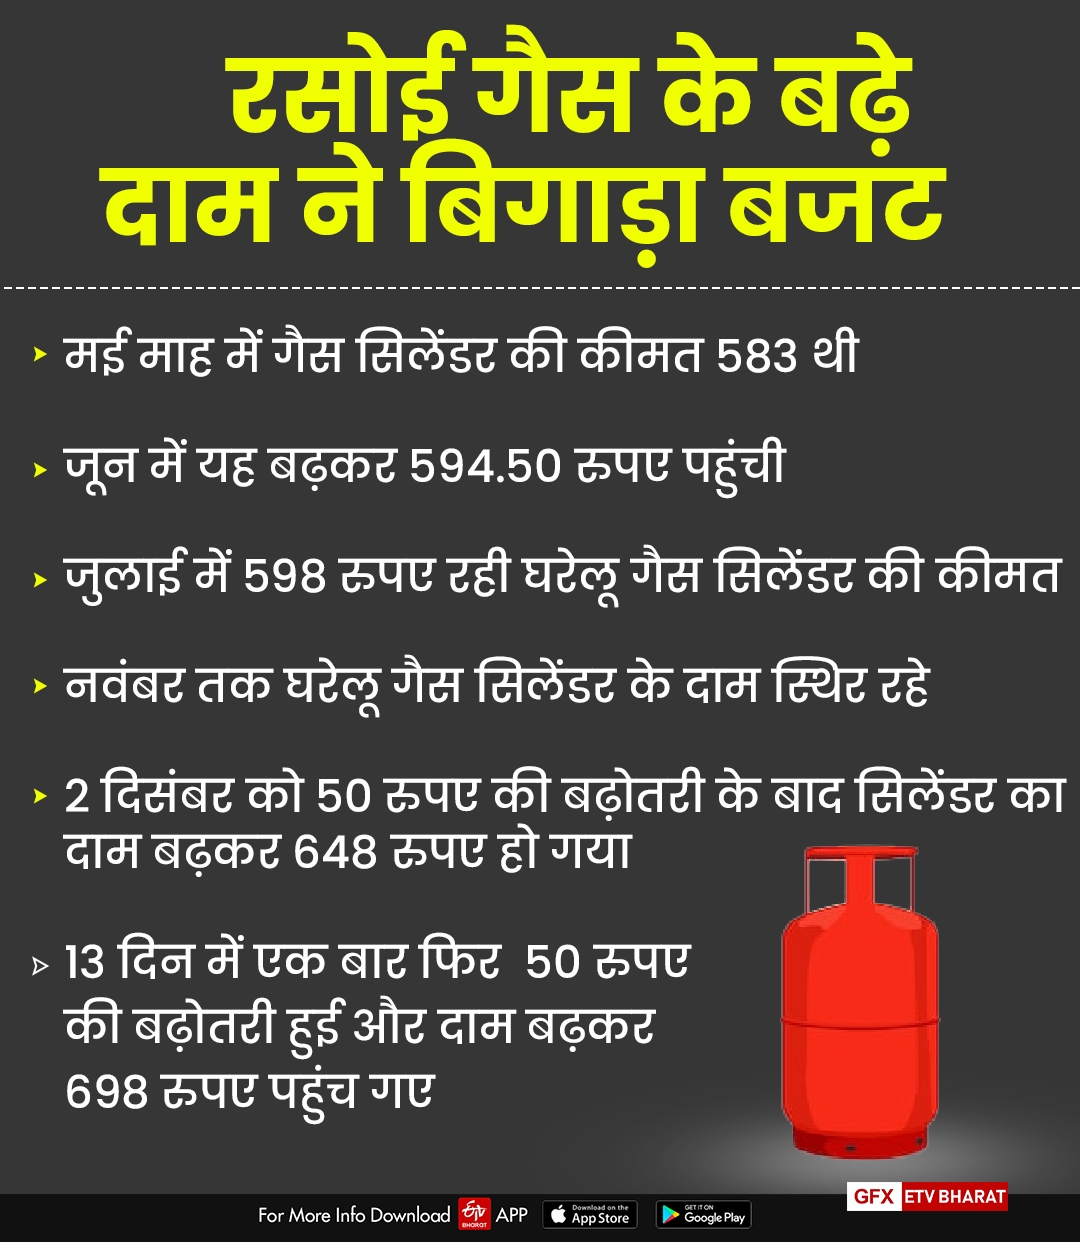 LPG Cylinder rate increased, Jaipur news